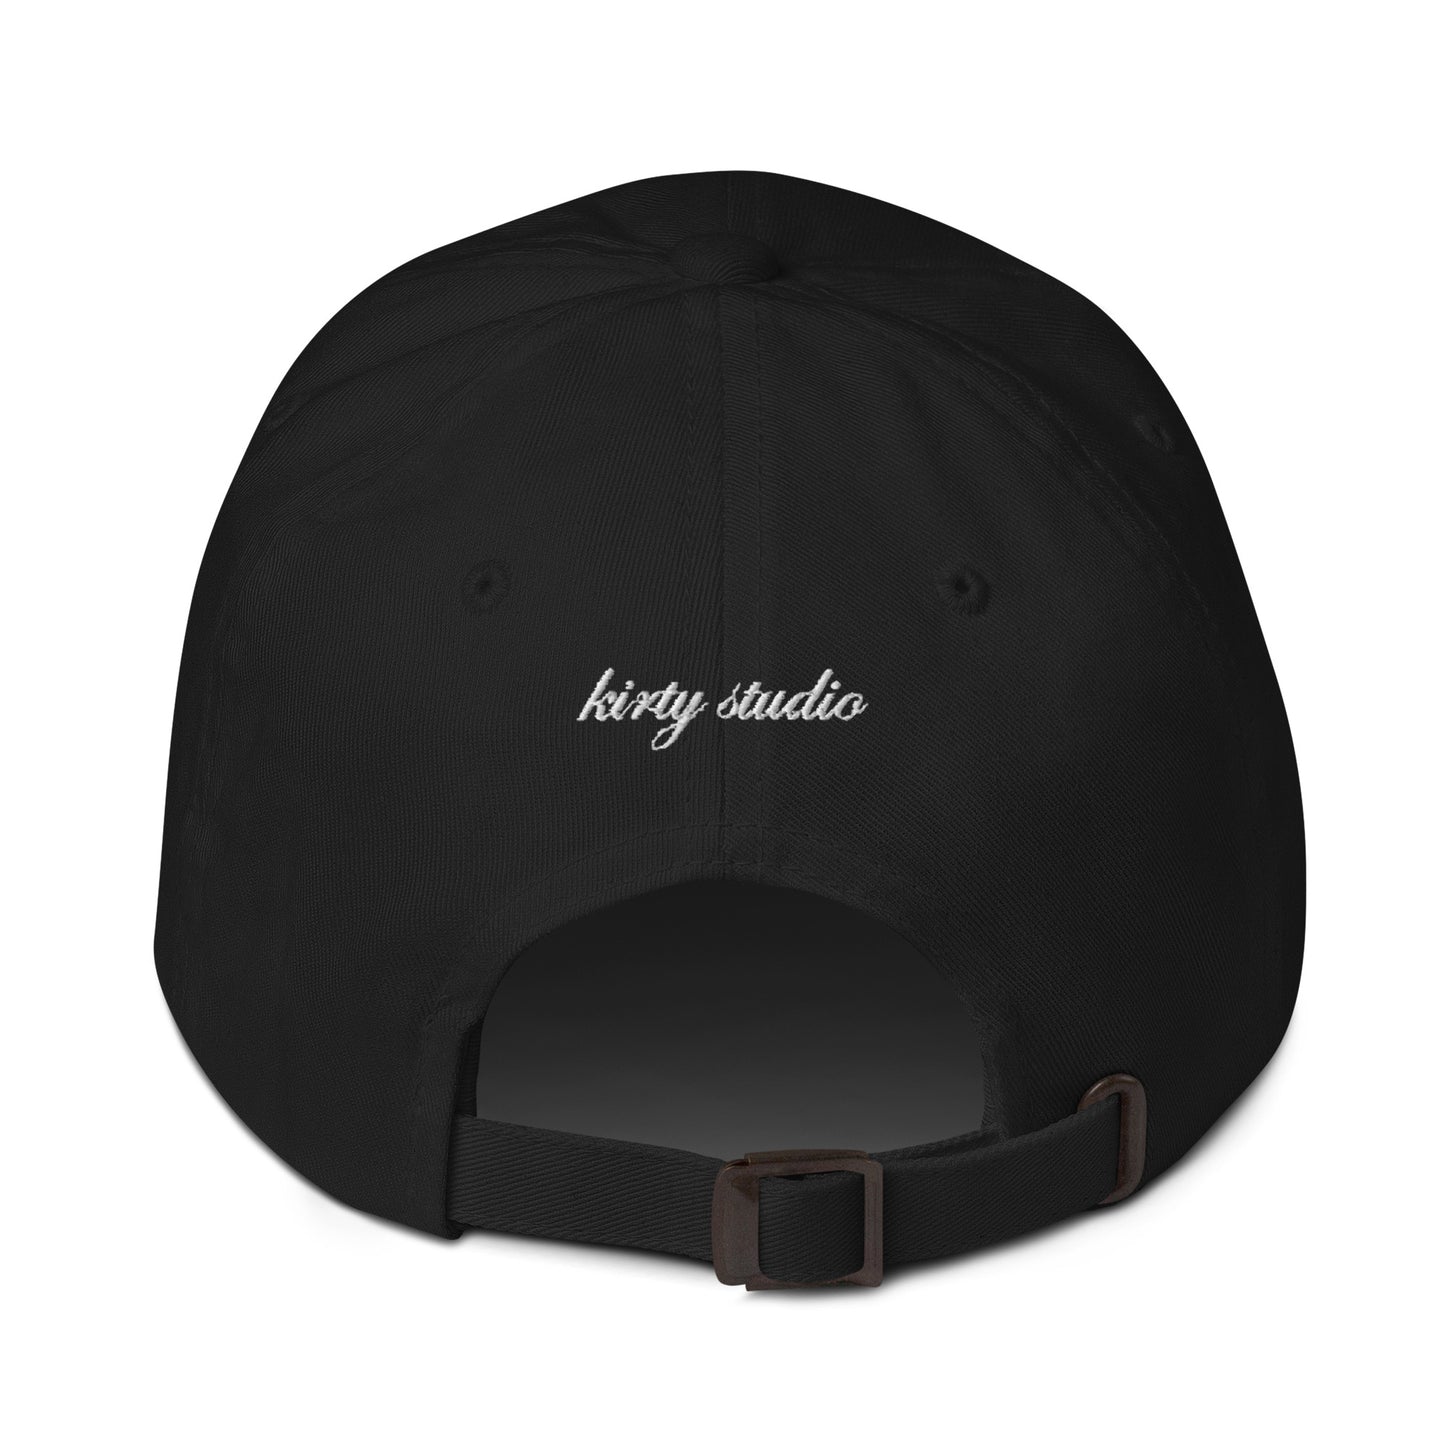 'Dirty Martini Club' Dad Hat - Noir